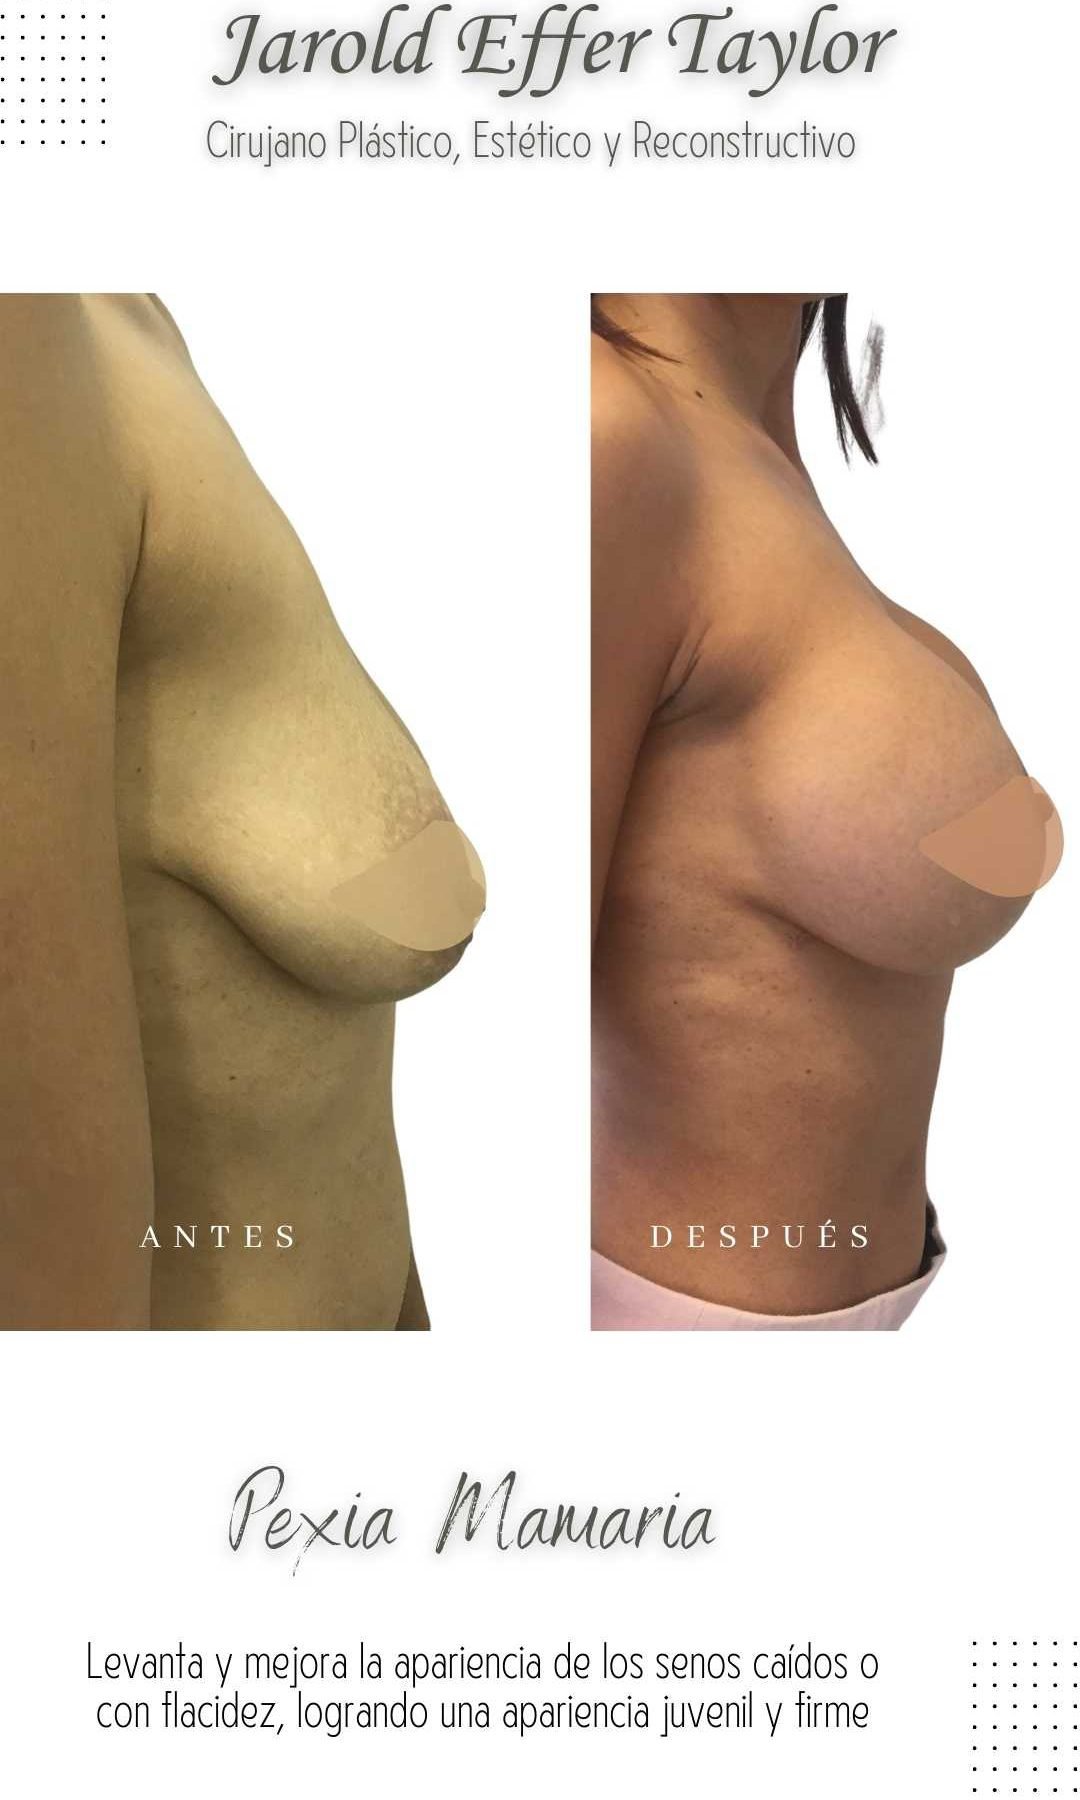 Cirugia-plastica-Cirujano-Plastico-Jarold-Effer-Taylor-procedimiento-mamoplastia-pexia-mamaria-antes-y-despues-2